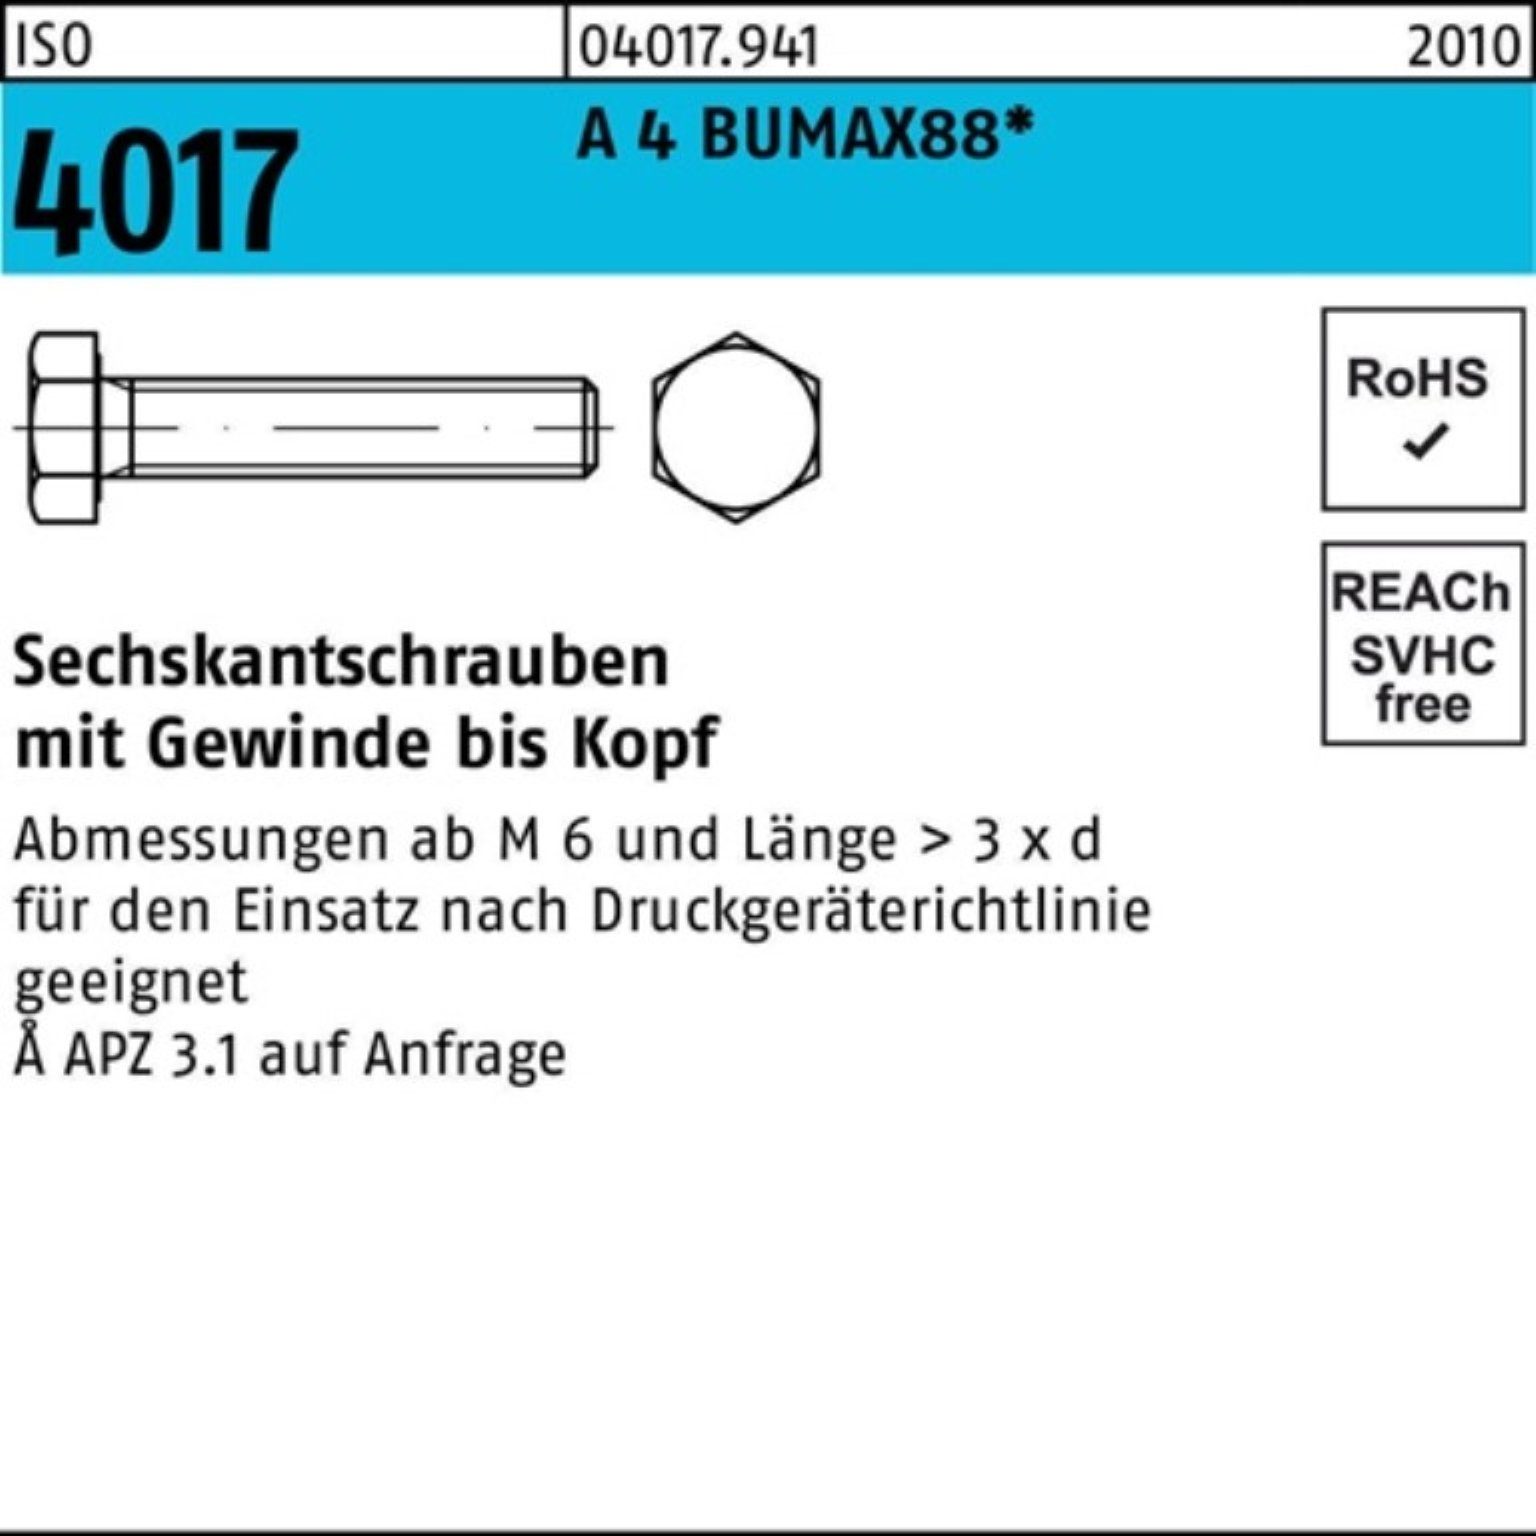 25 Sechskantschraube Stück 100er VG Pack Sechskantschraube 50 4017 4 A BUMAX88 ISO M8x Bufab